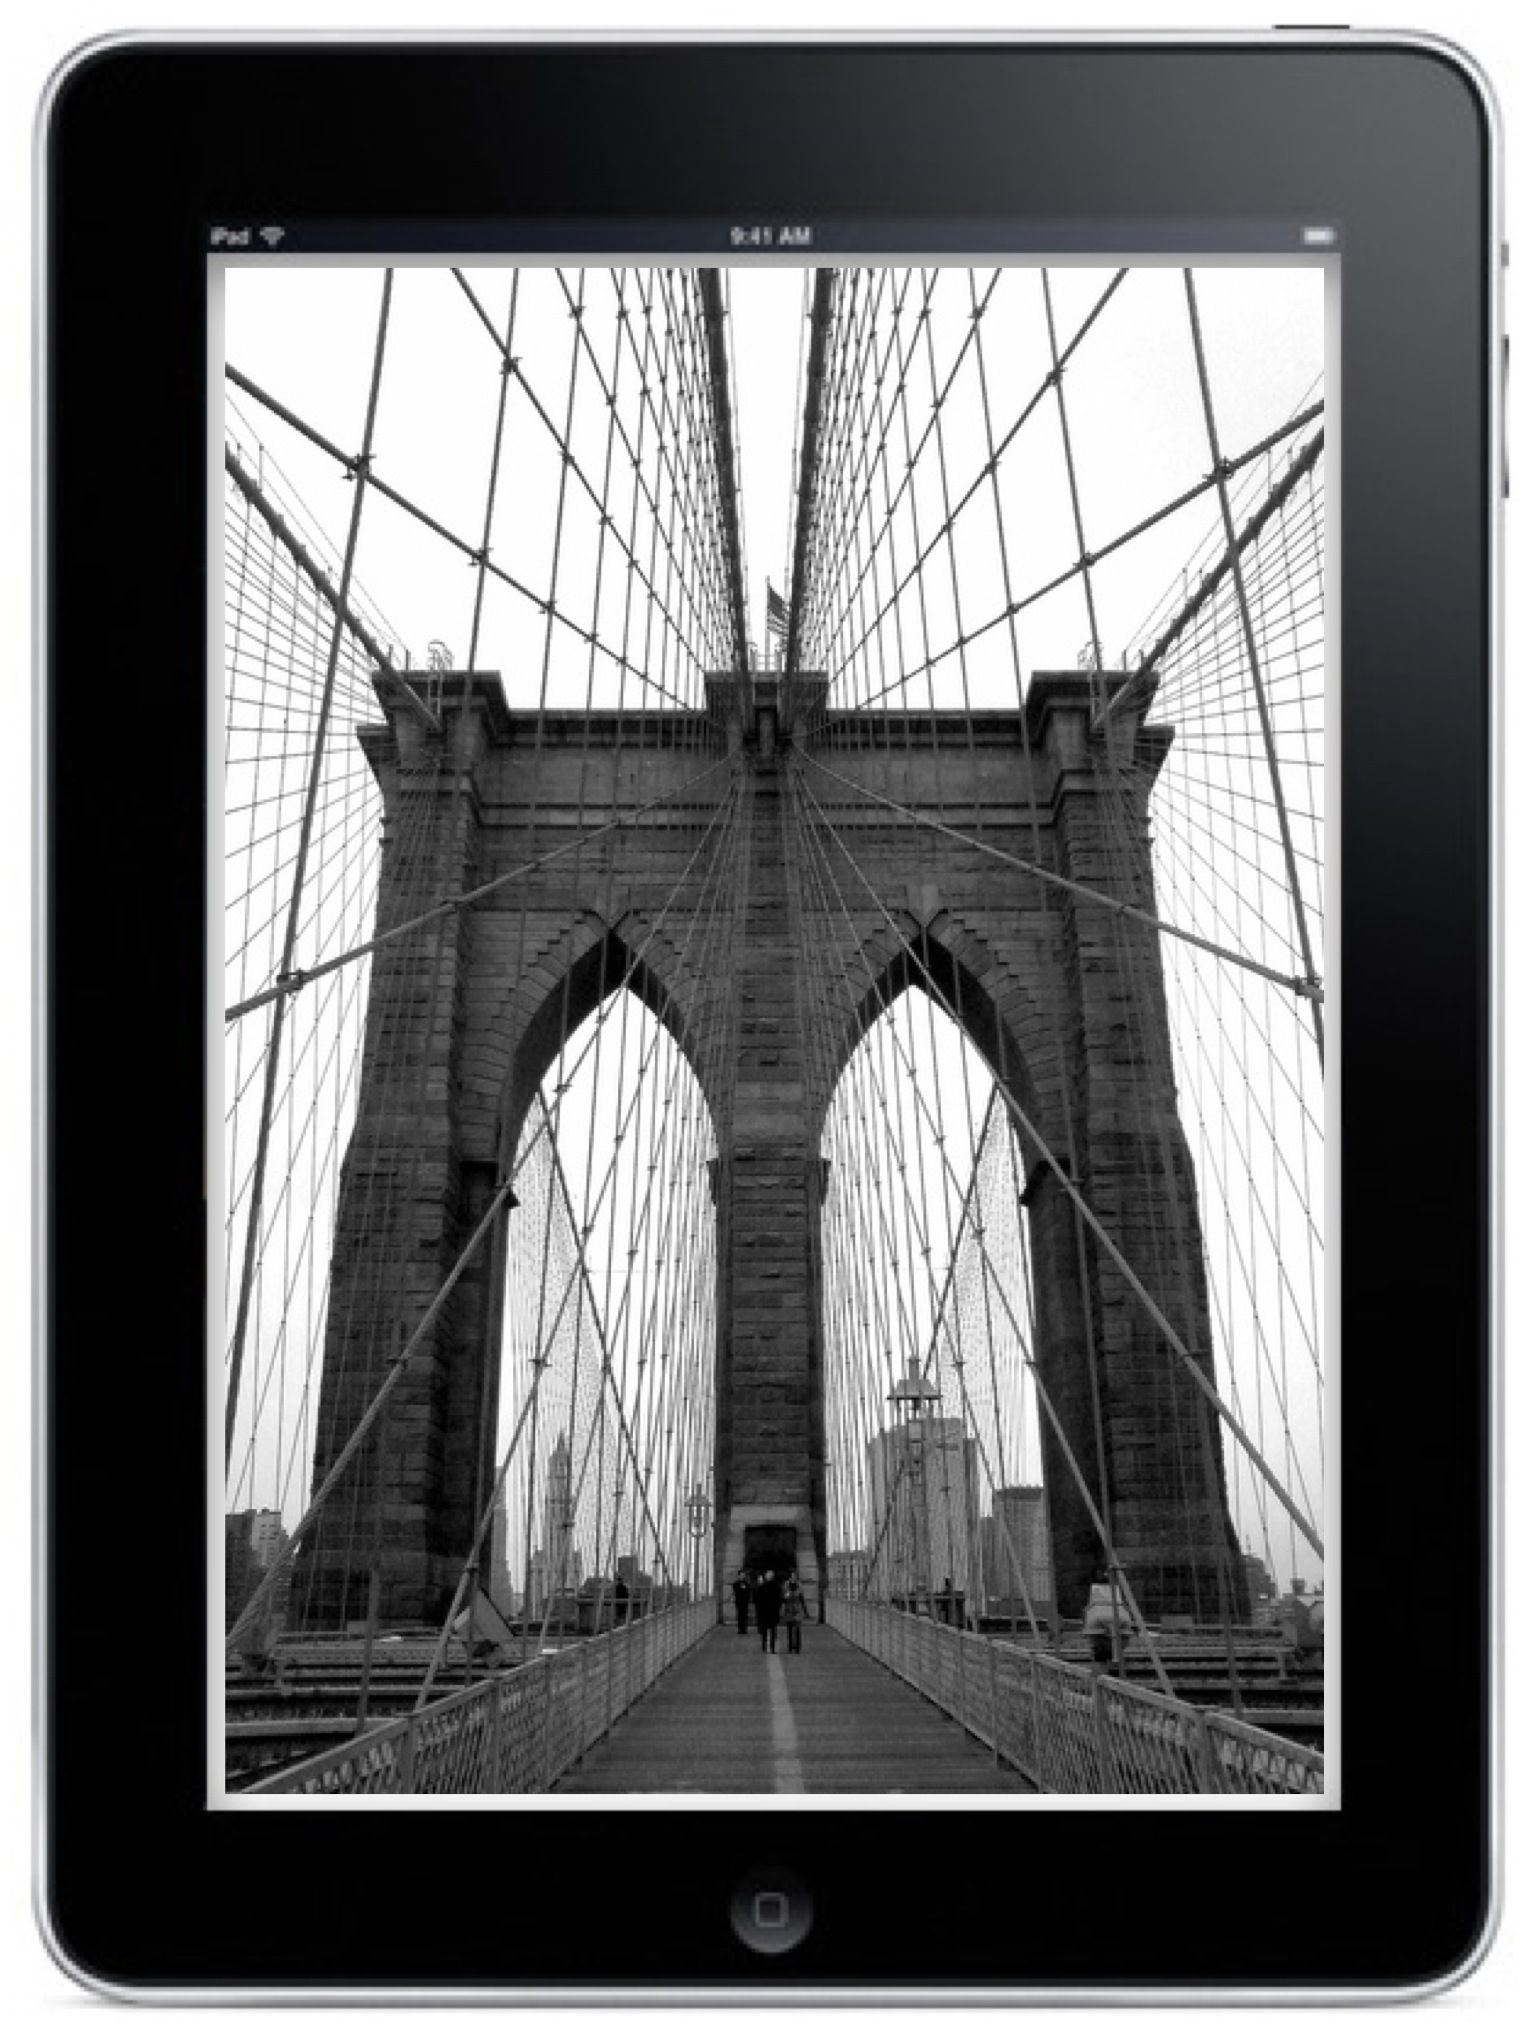 Brooklyn iOS - May 2014